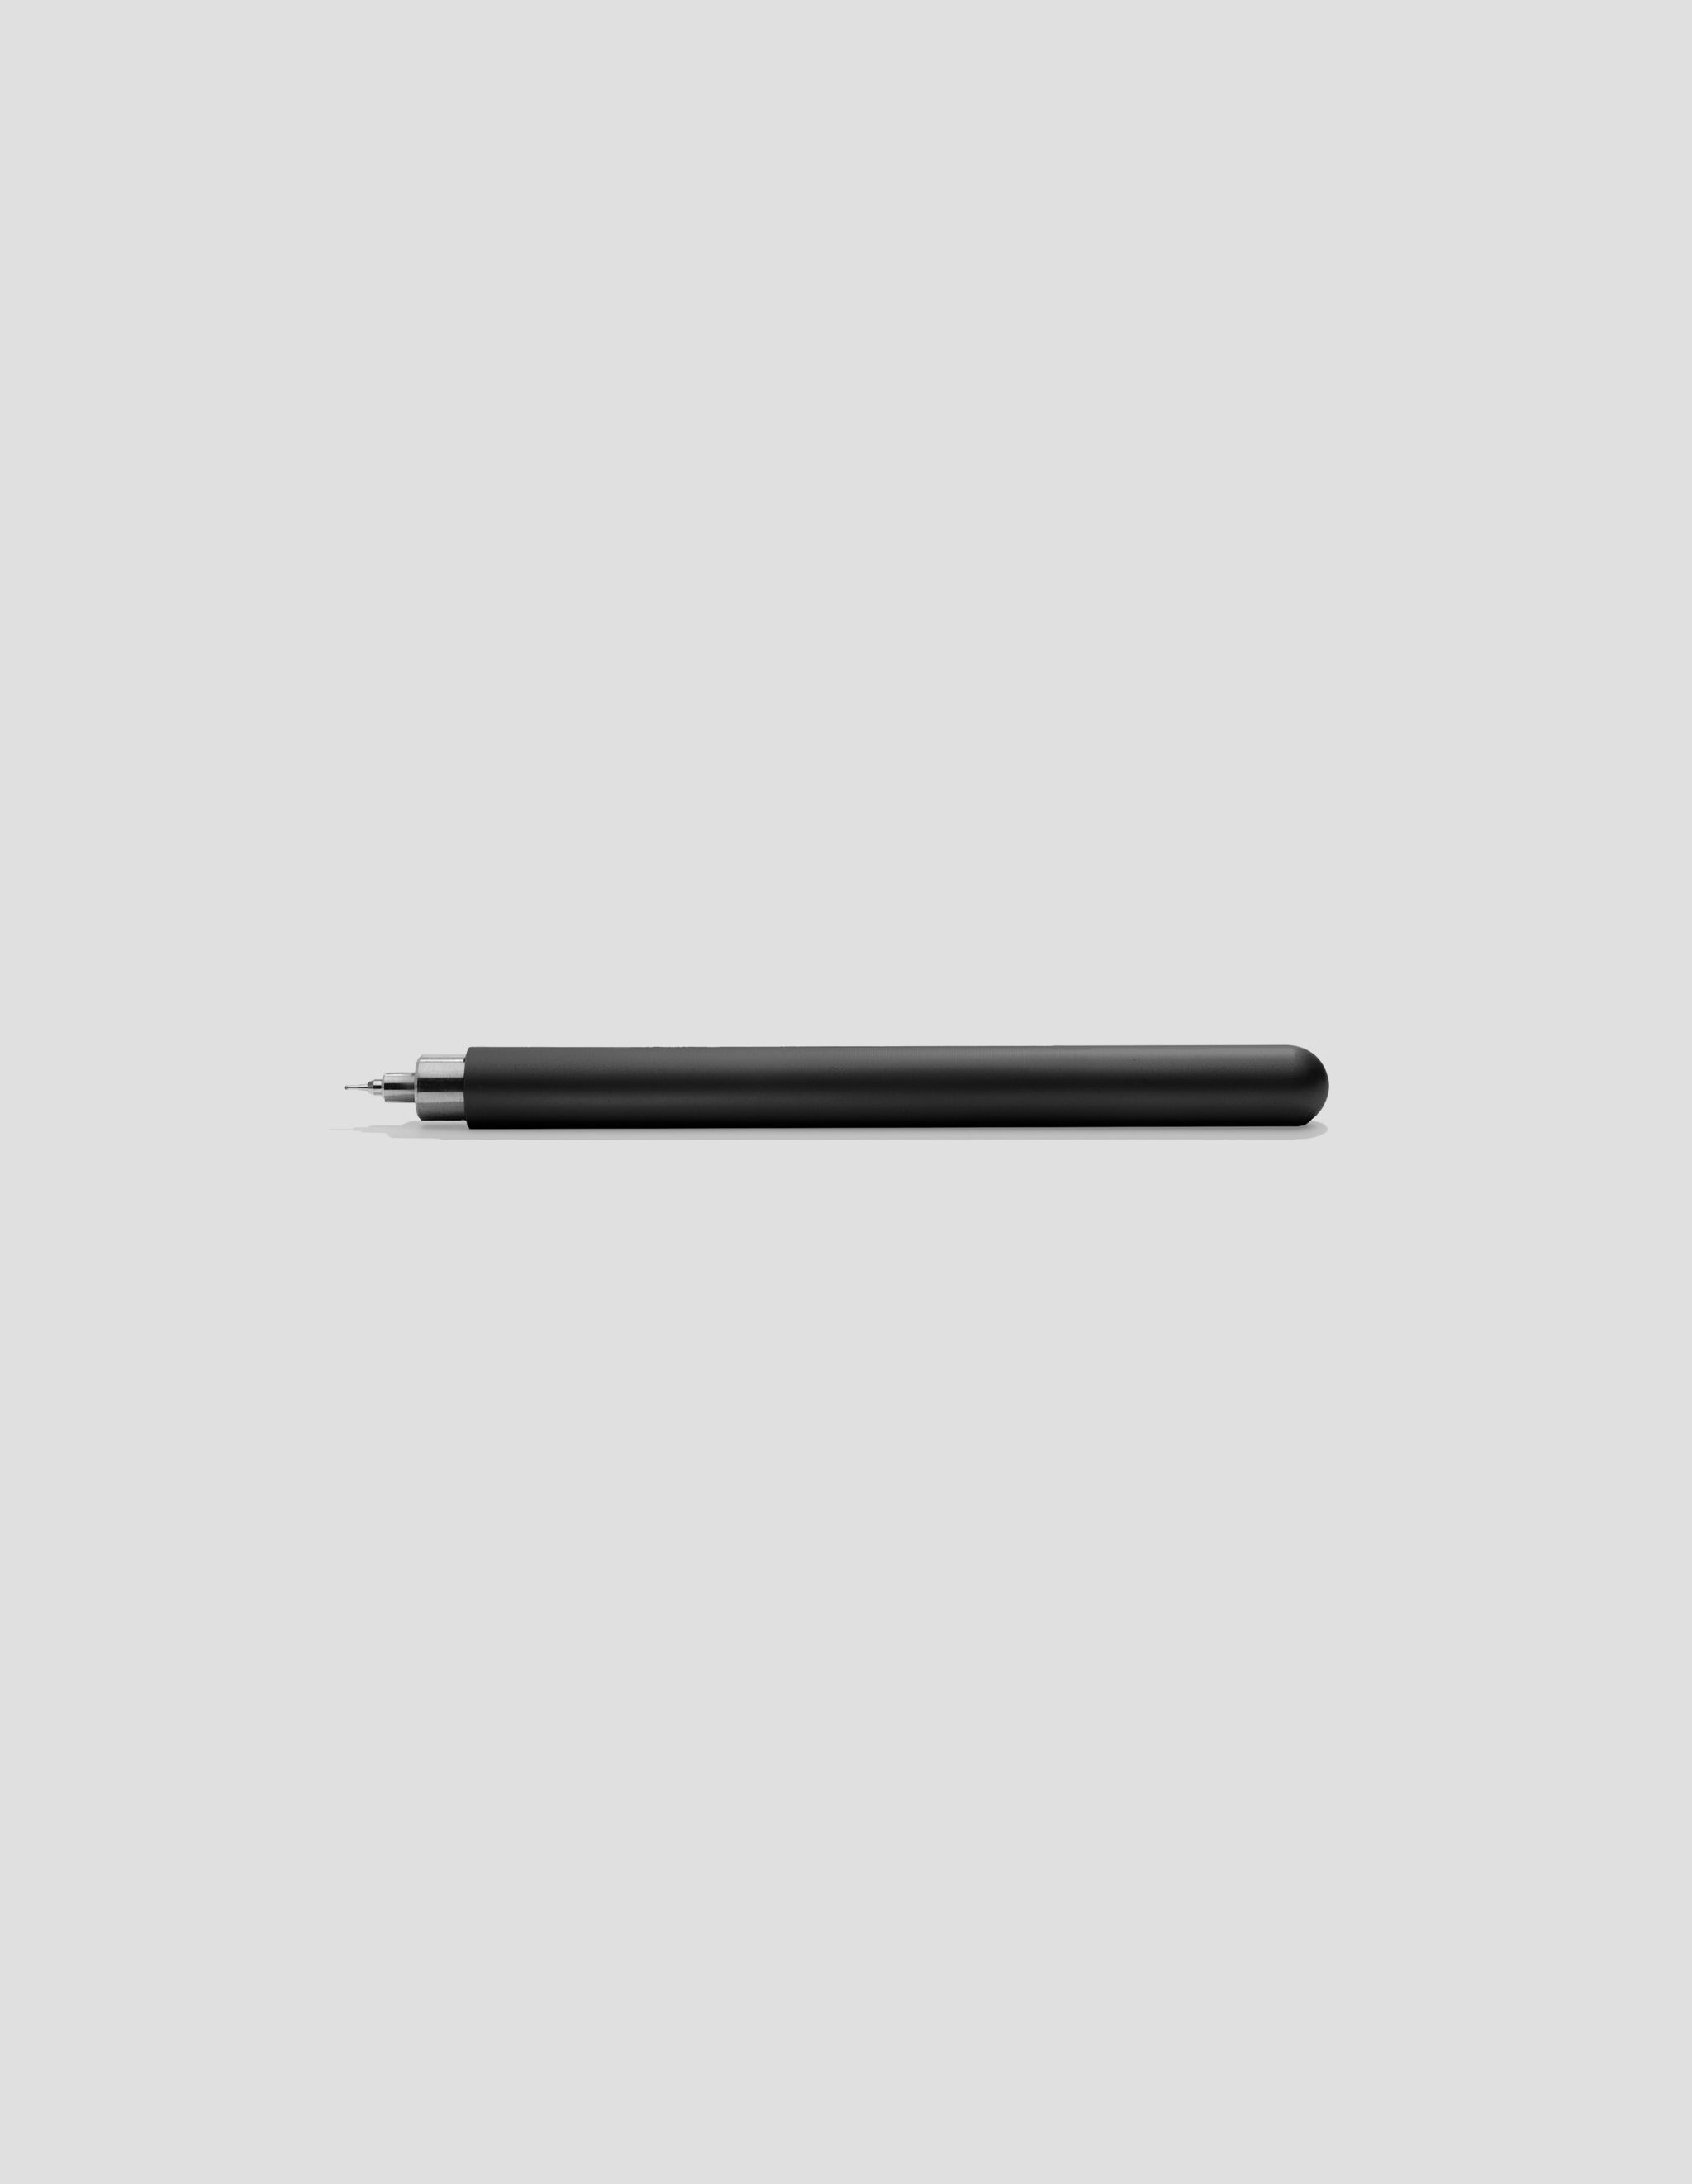 CW&T Pen Type-B Titan Cerakote Schwarz